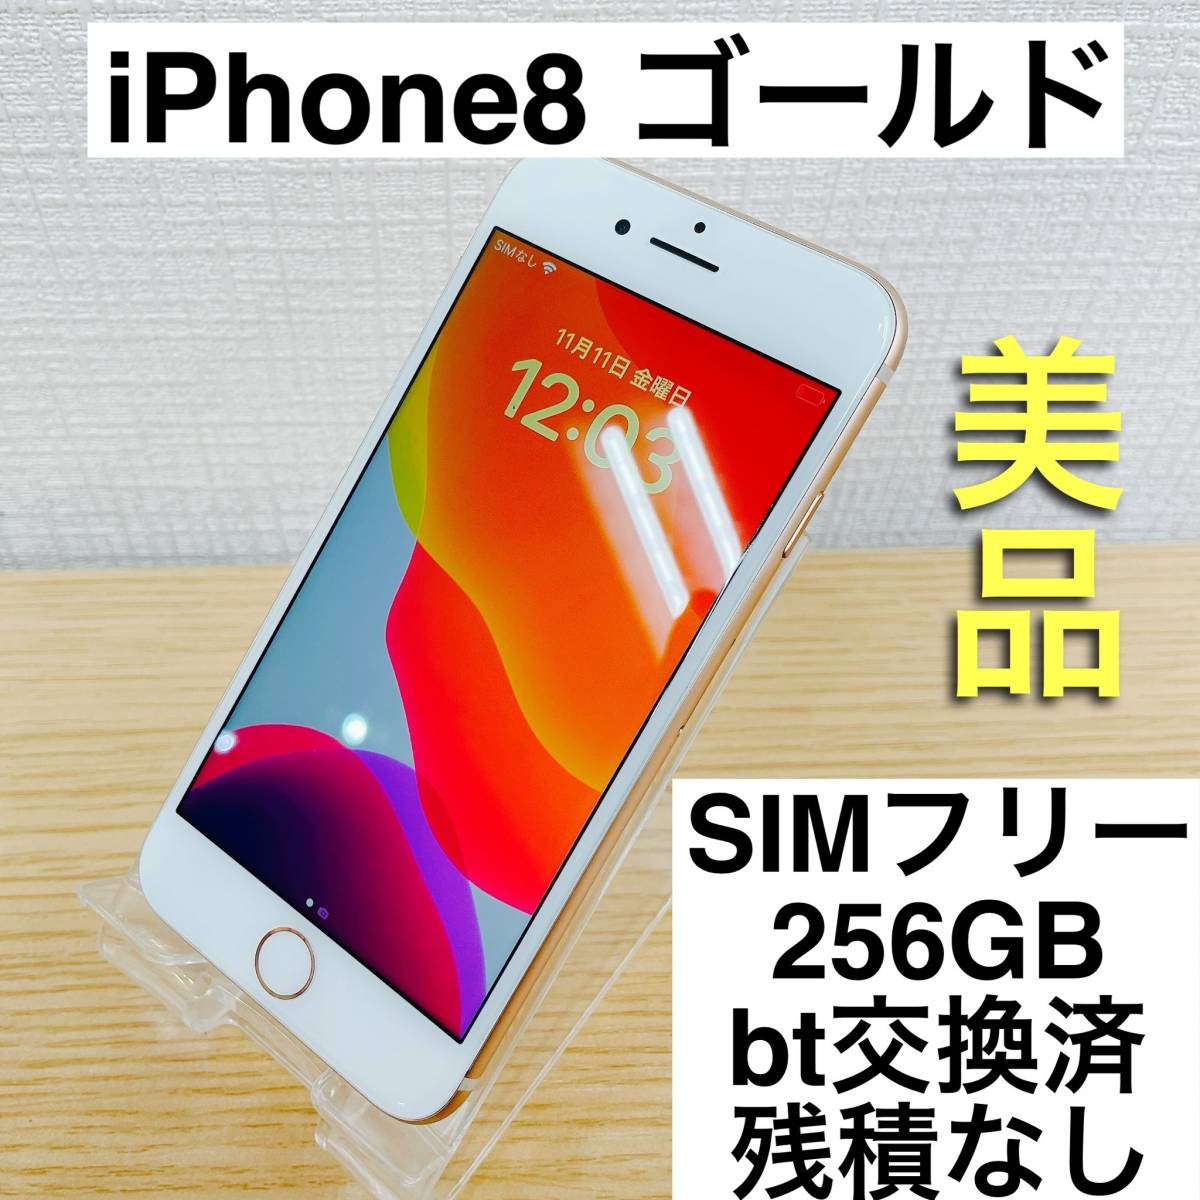 スマートフォン/携帯電話 スマートフォン本体 数量限定・即納特価!! iPhone8 256GB SIMフリー - 通販 - www 